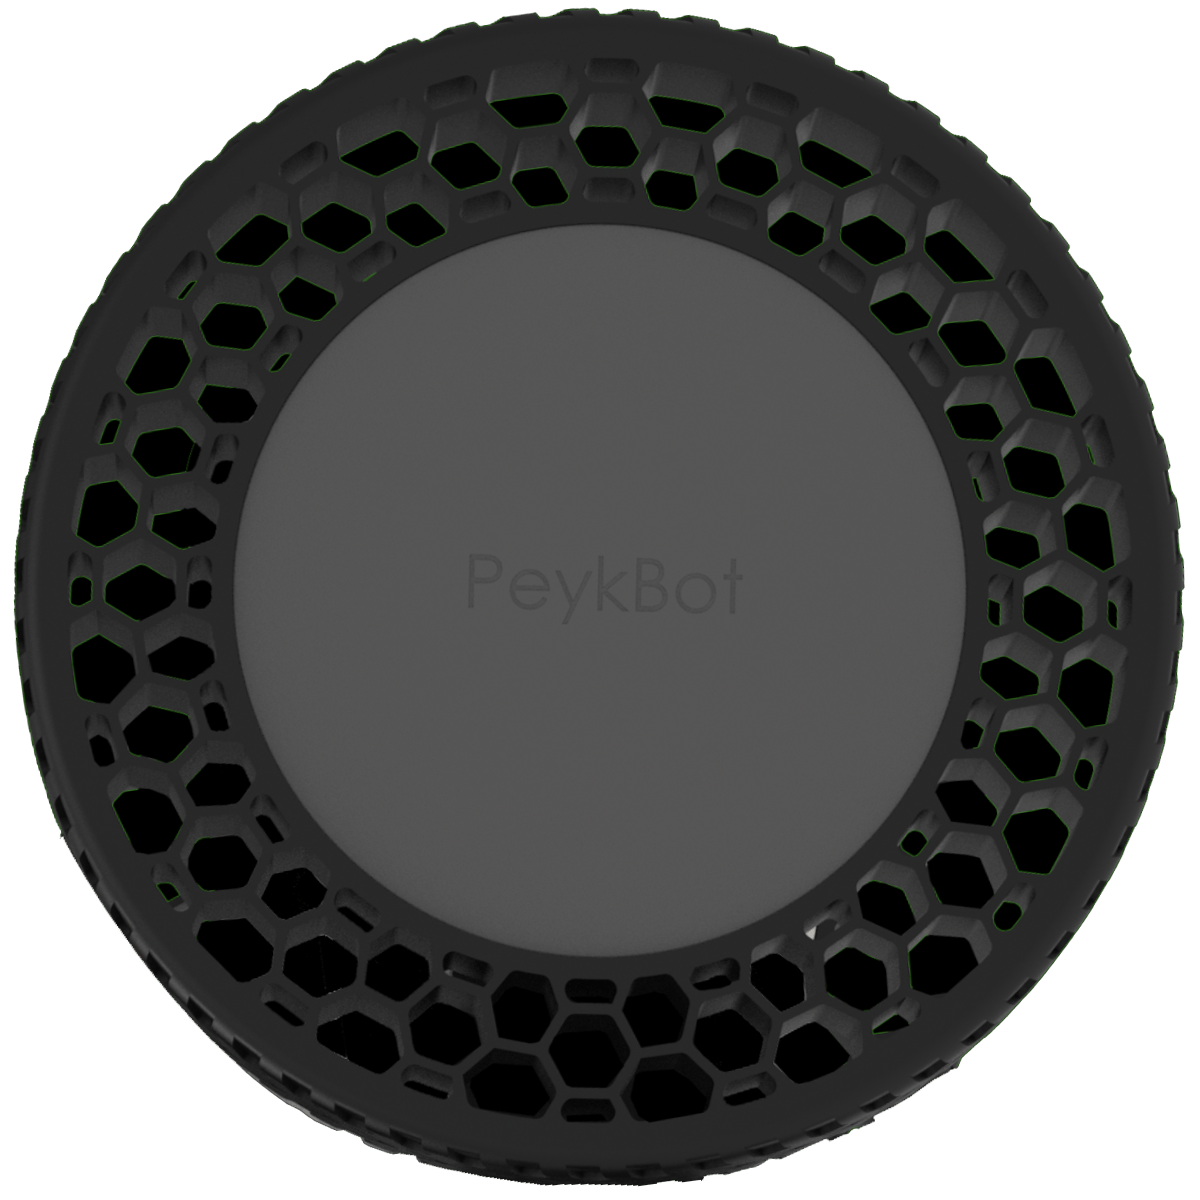 Peykbot Wheel